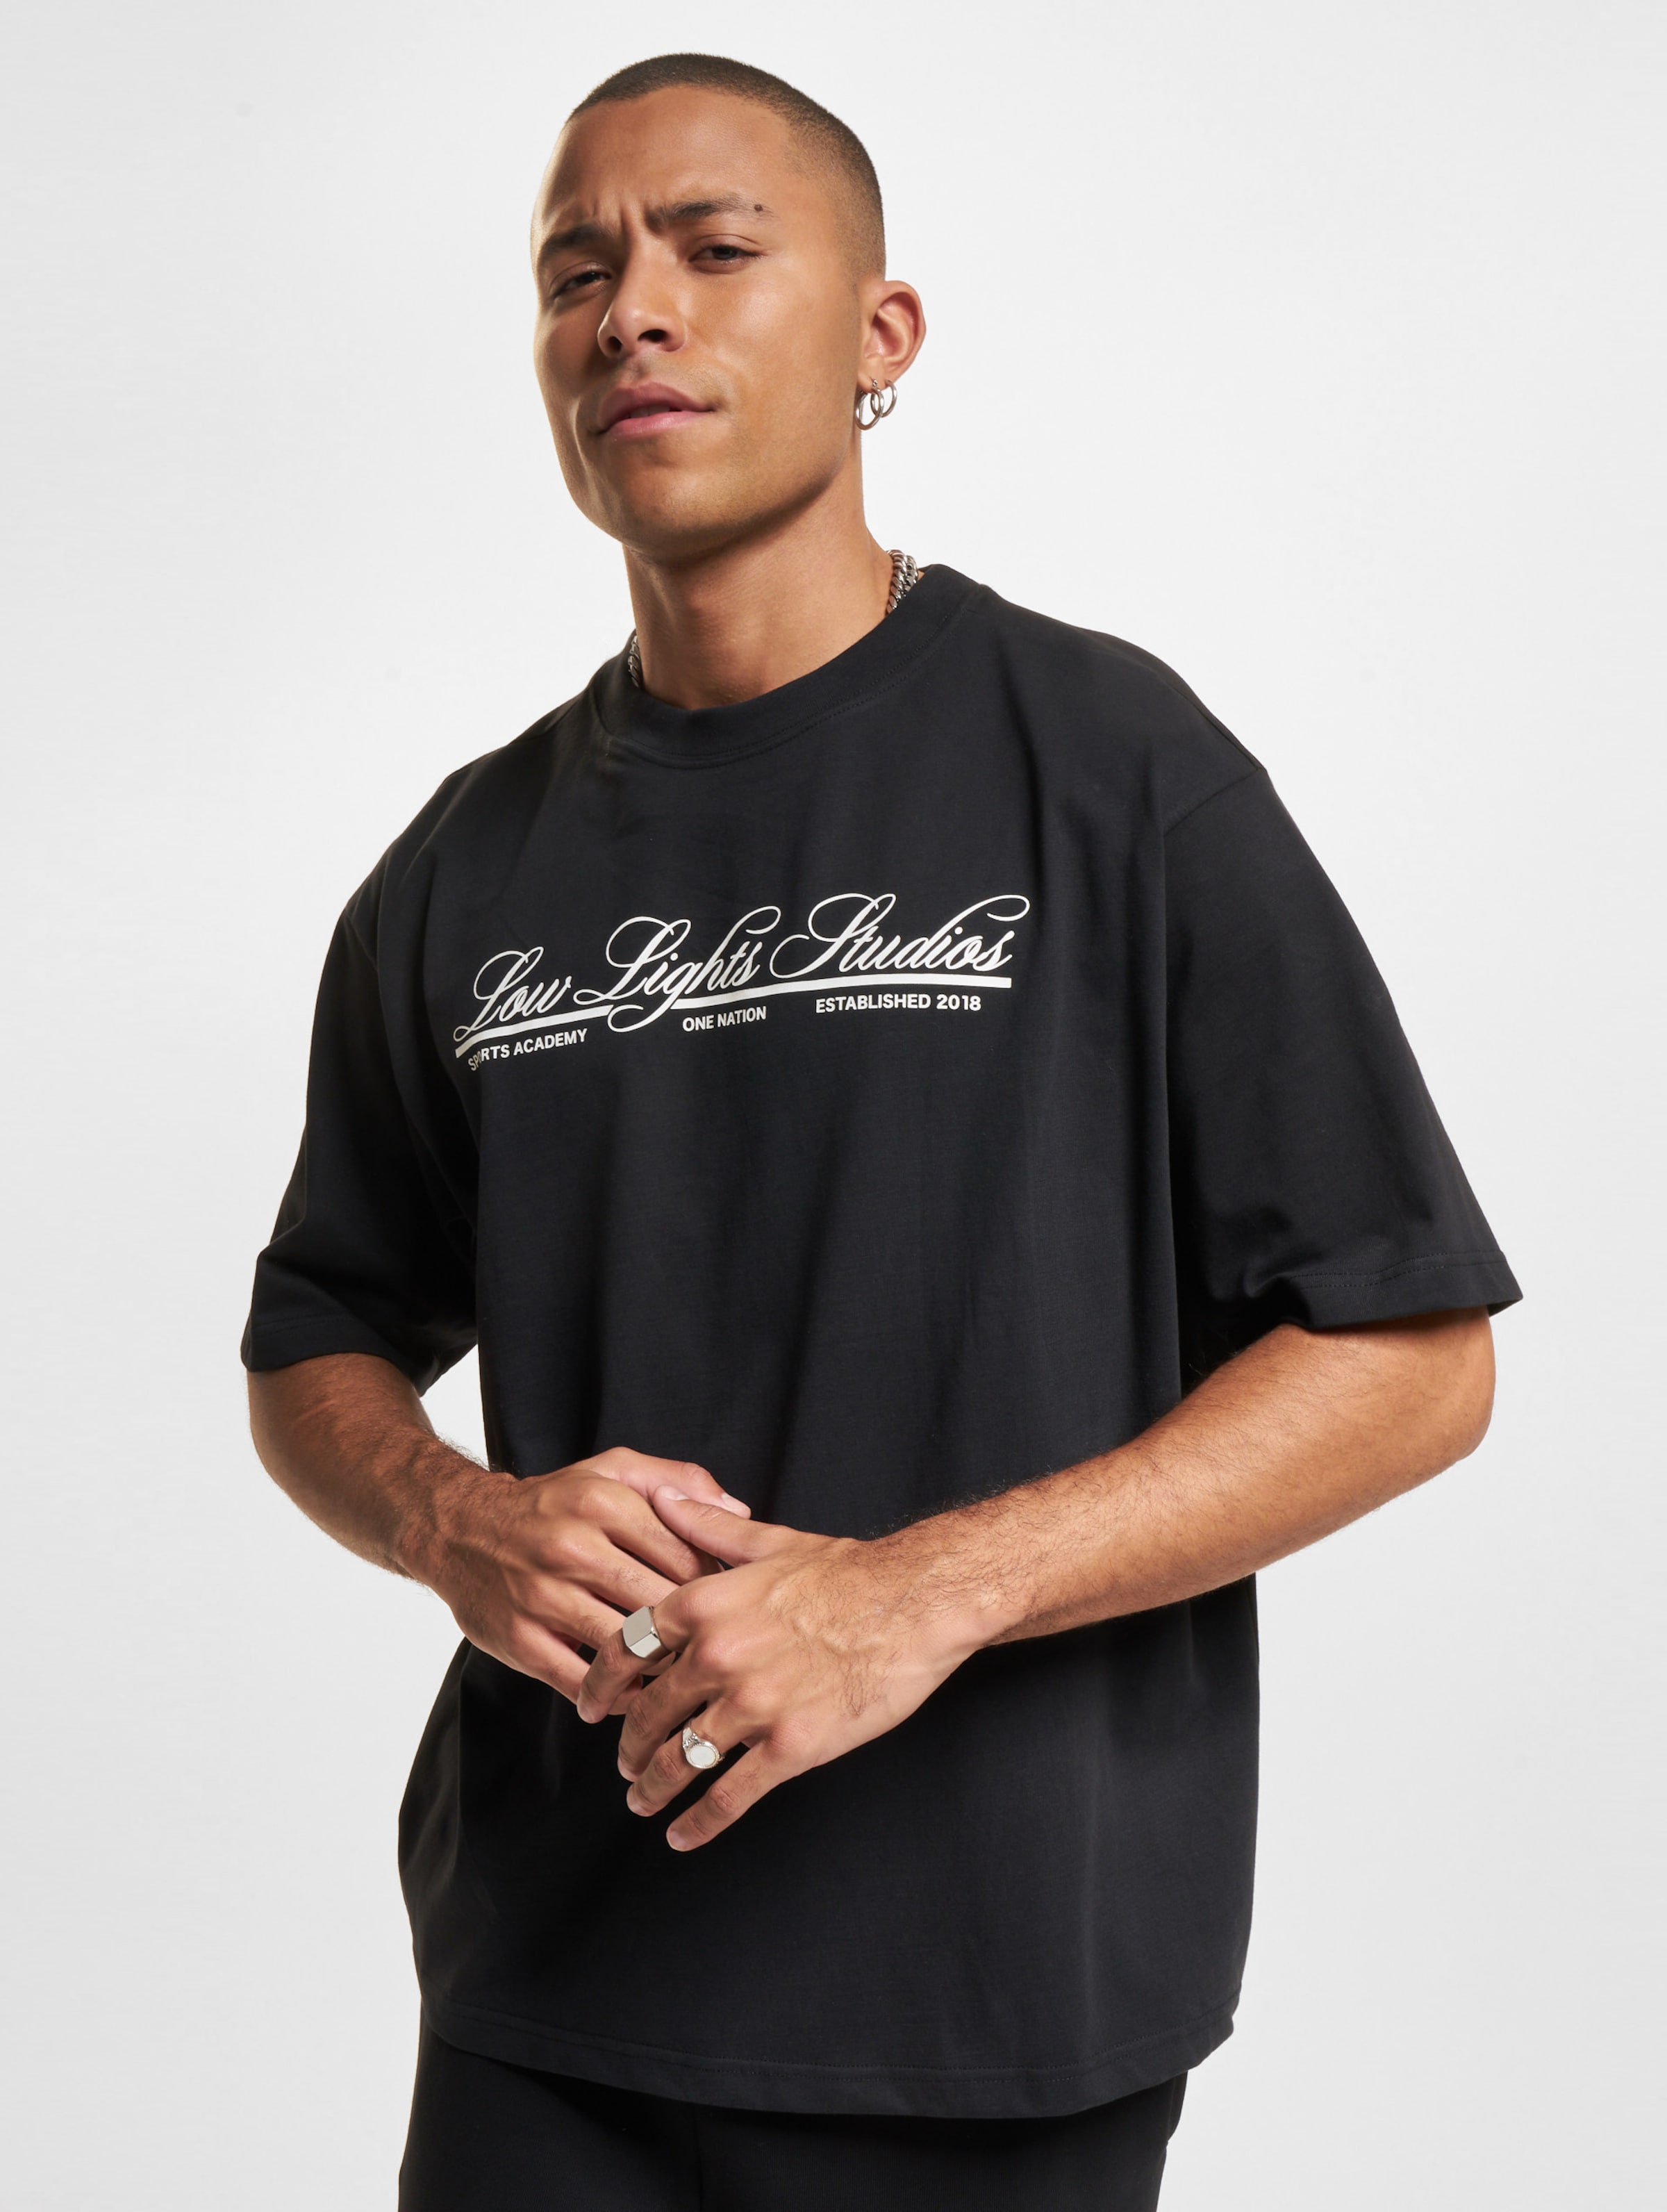 Low Lights Studios National T-Shirt Männer,Unisex op kleur zwart, Maat XL